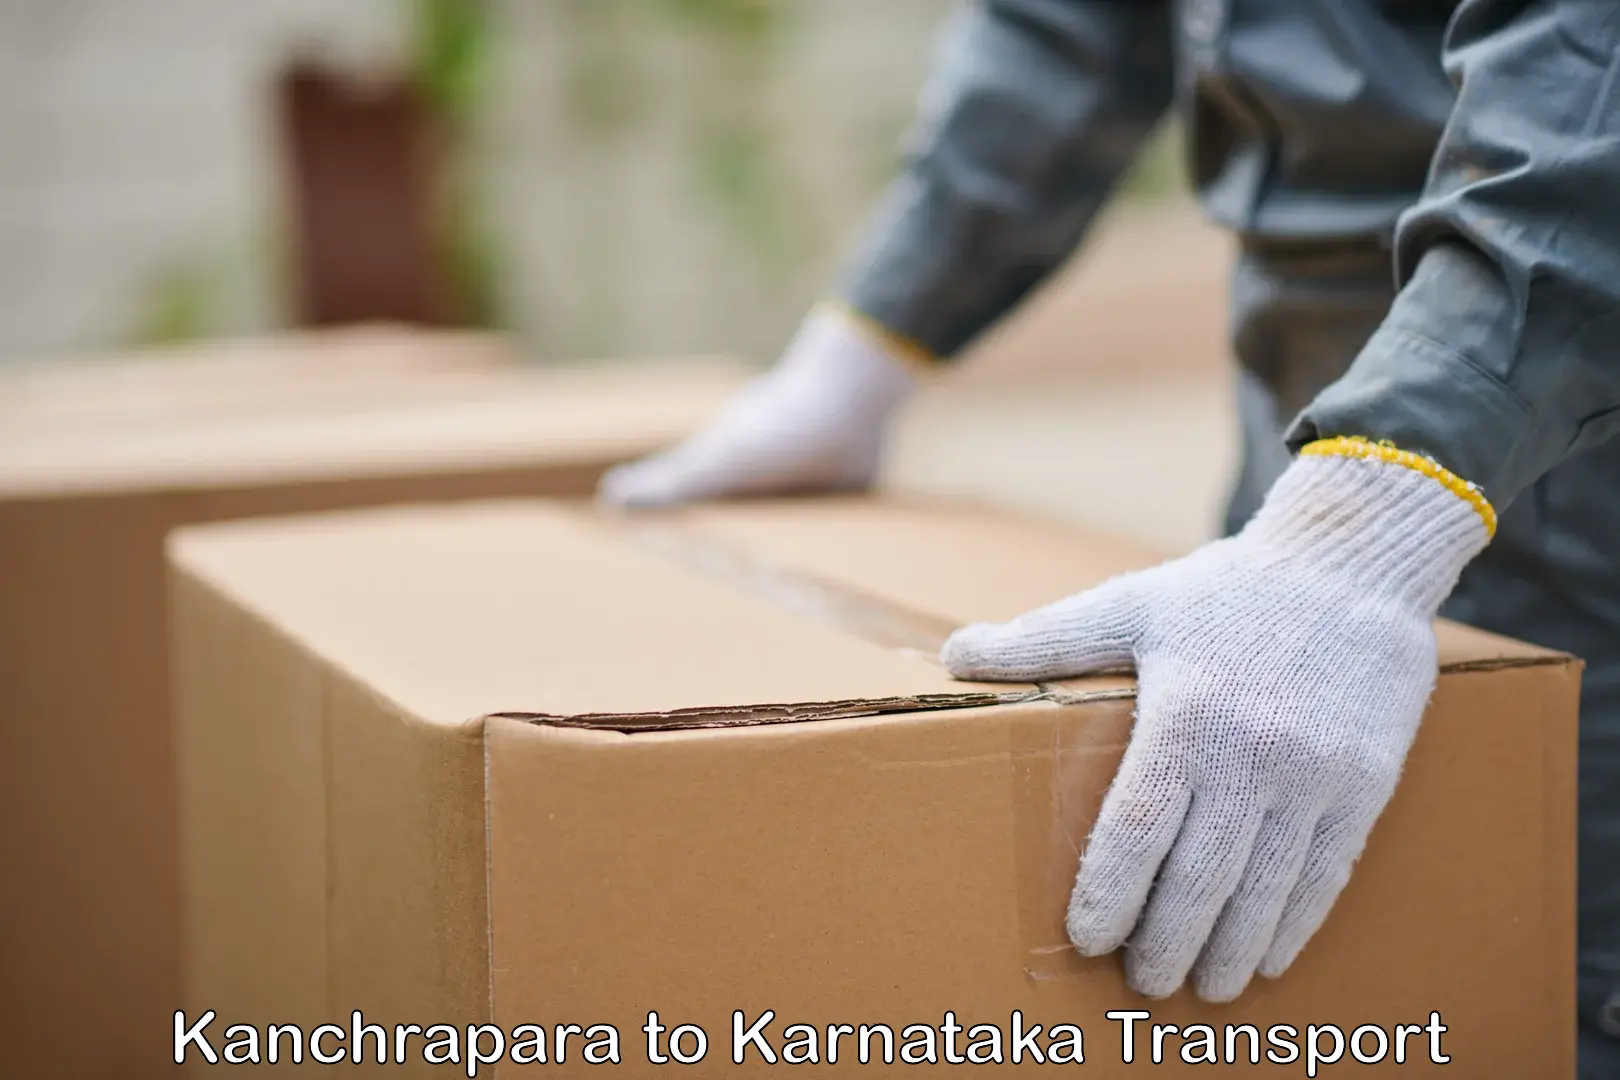 Transport in sharing Kanchrapara to Karnataka